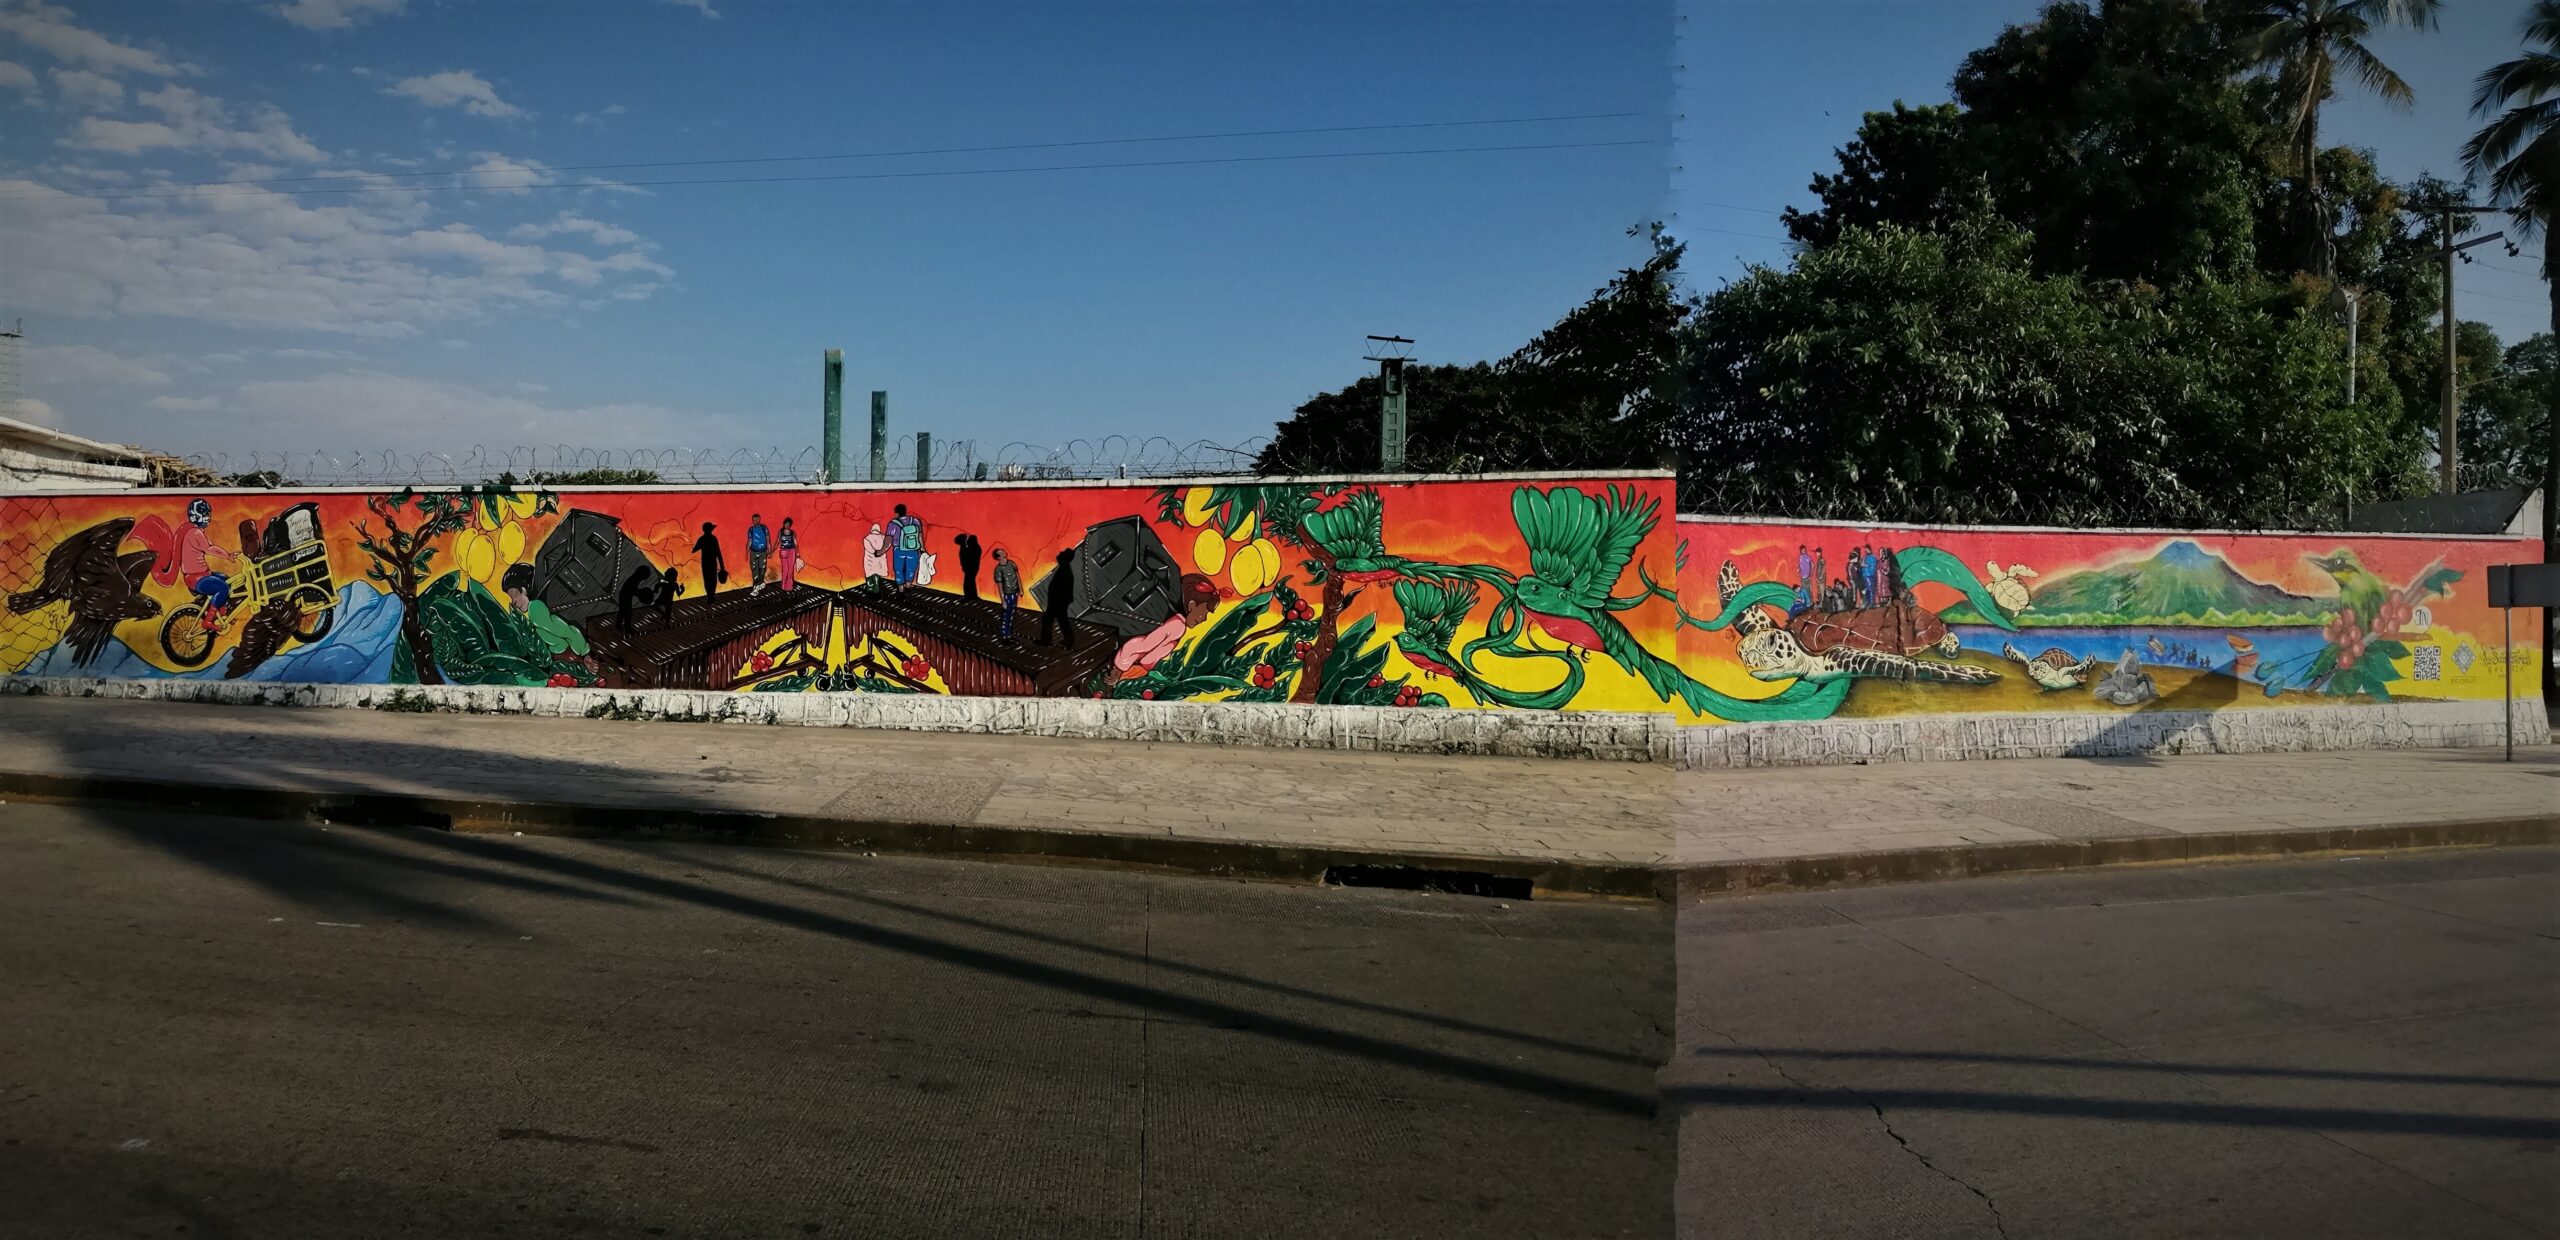 Crean mural “Donde estamos, todos somos” para crear vínculos entre los habitantes de Tapachula